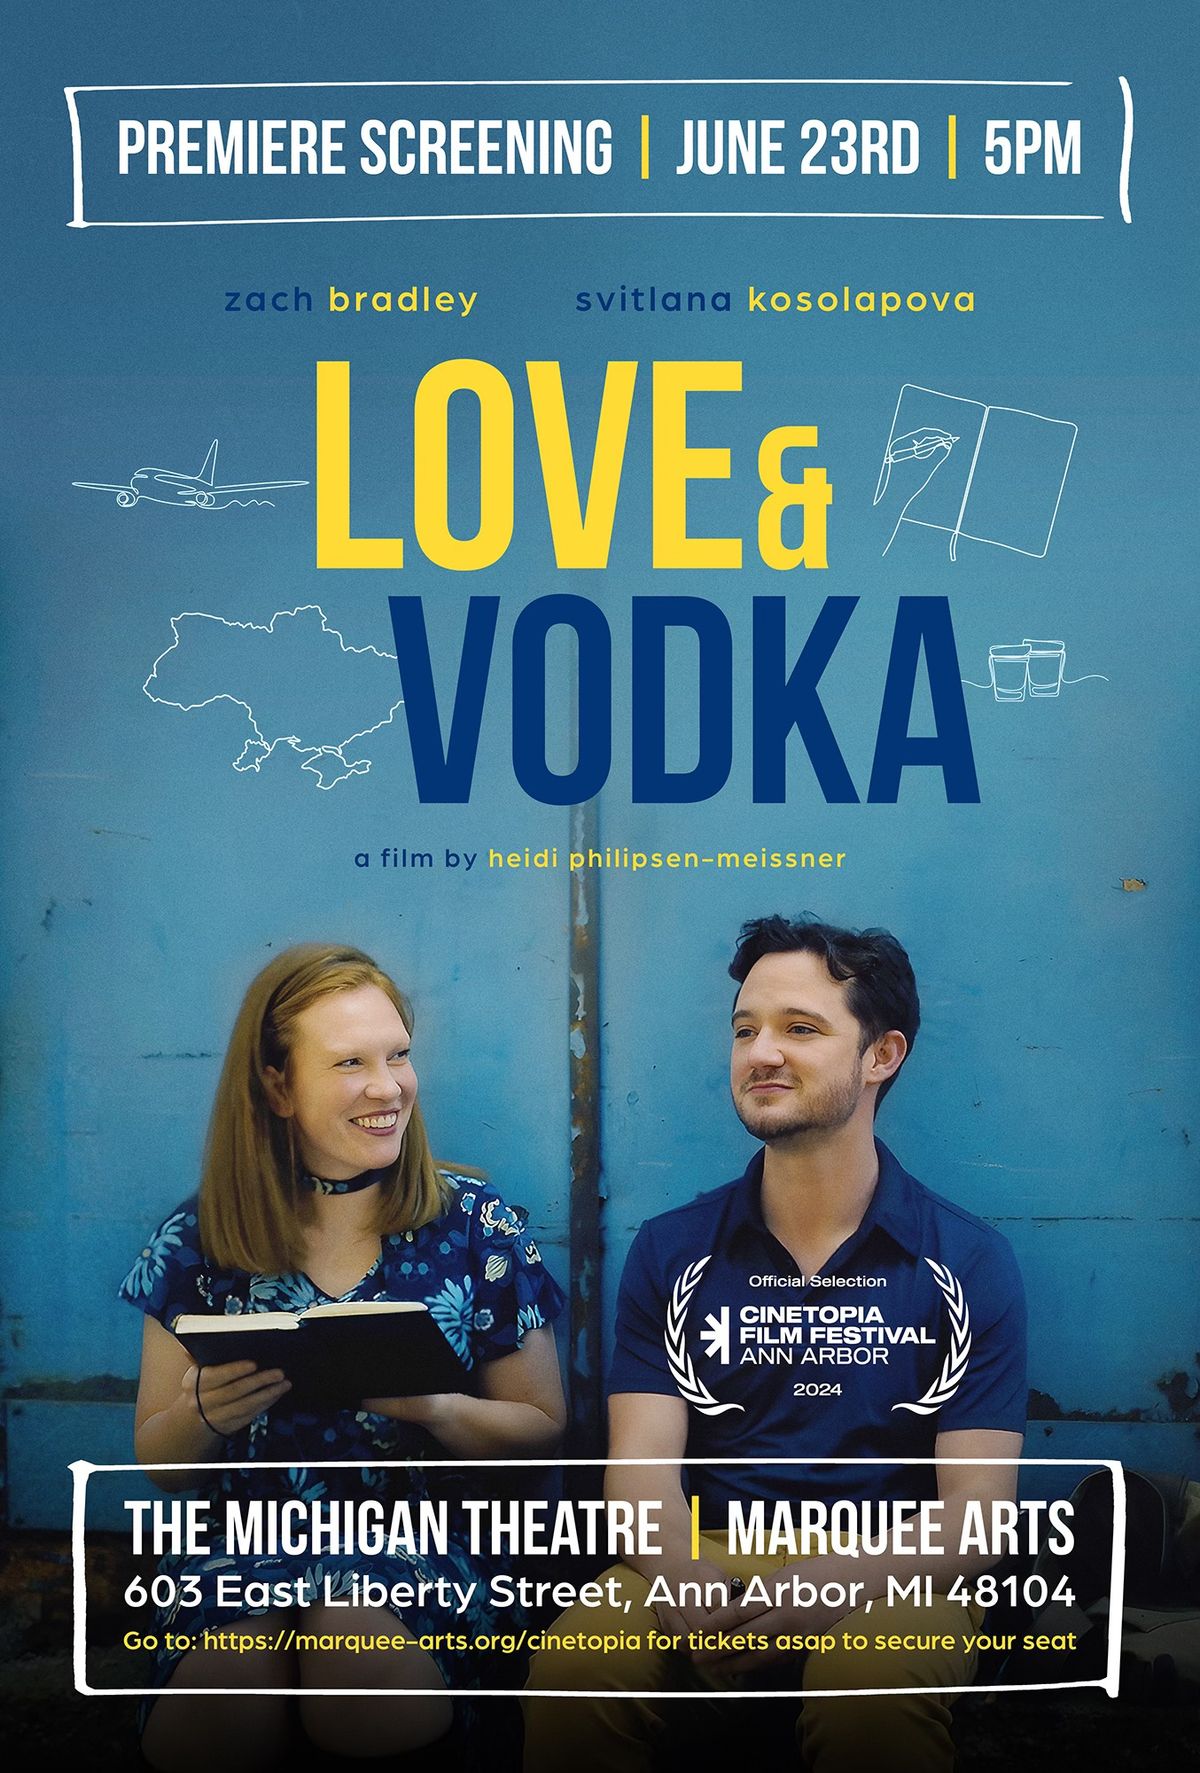 Love & Vodka Premiere Screening at the Cinetopia Film Festival in Ann Arbor, Michigan